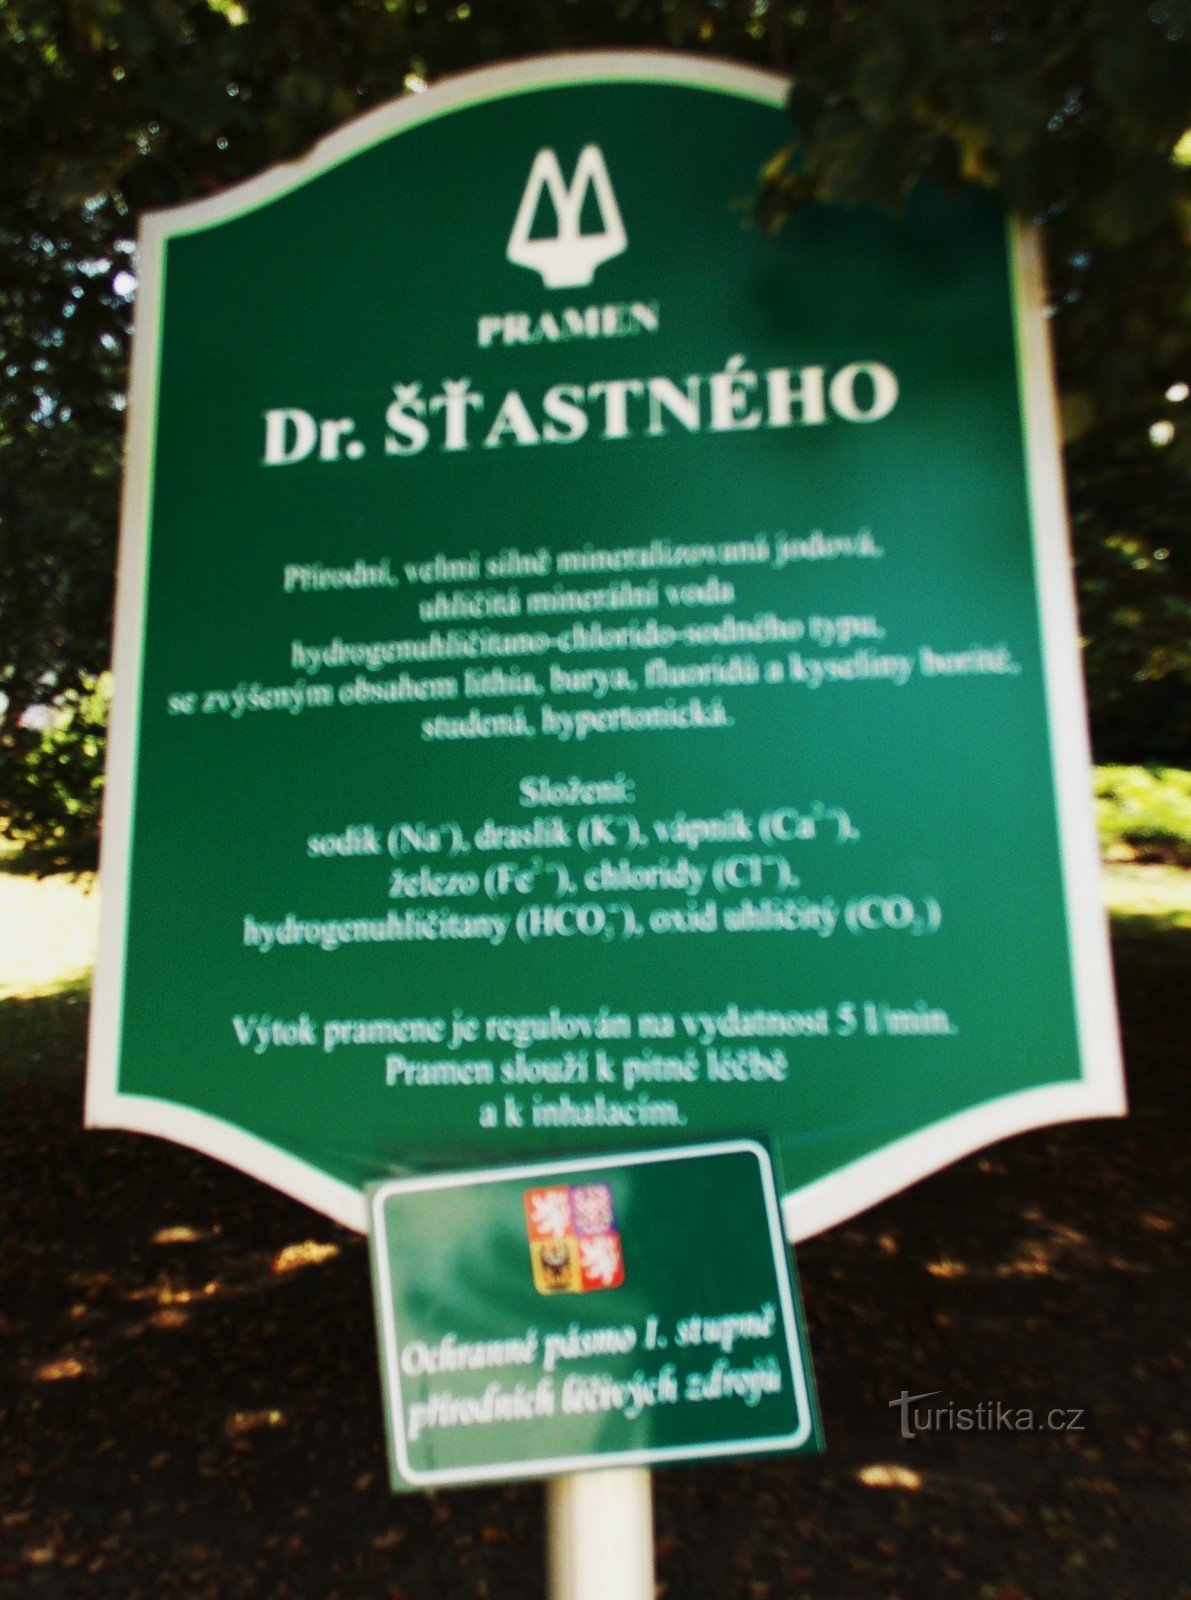 Tới nguồn Dr. Šťastneho ở Luhačovice